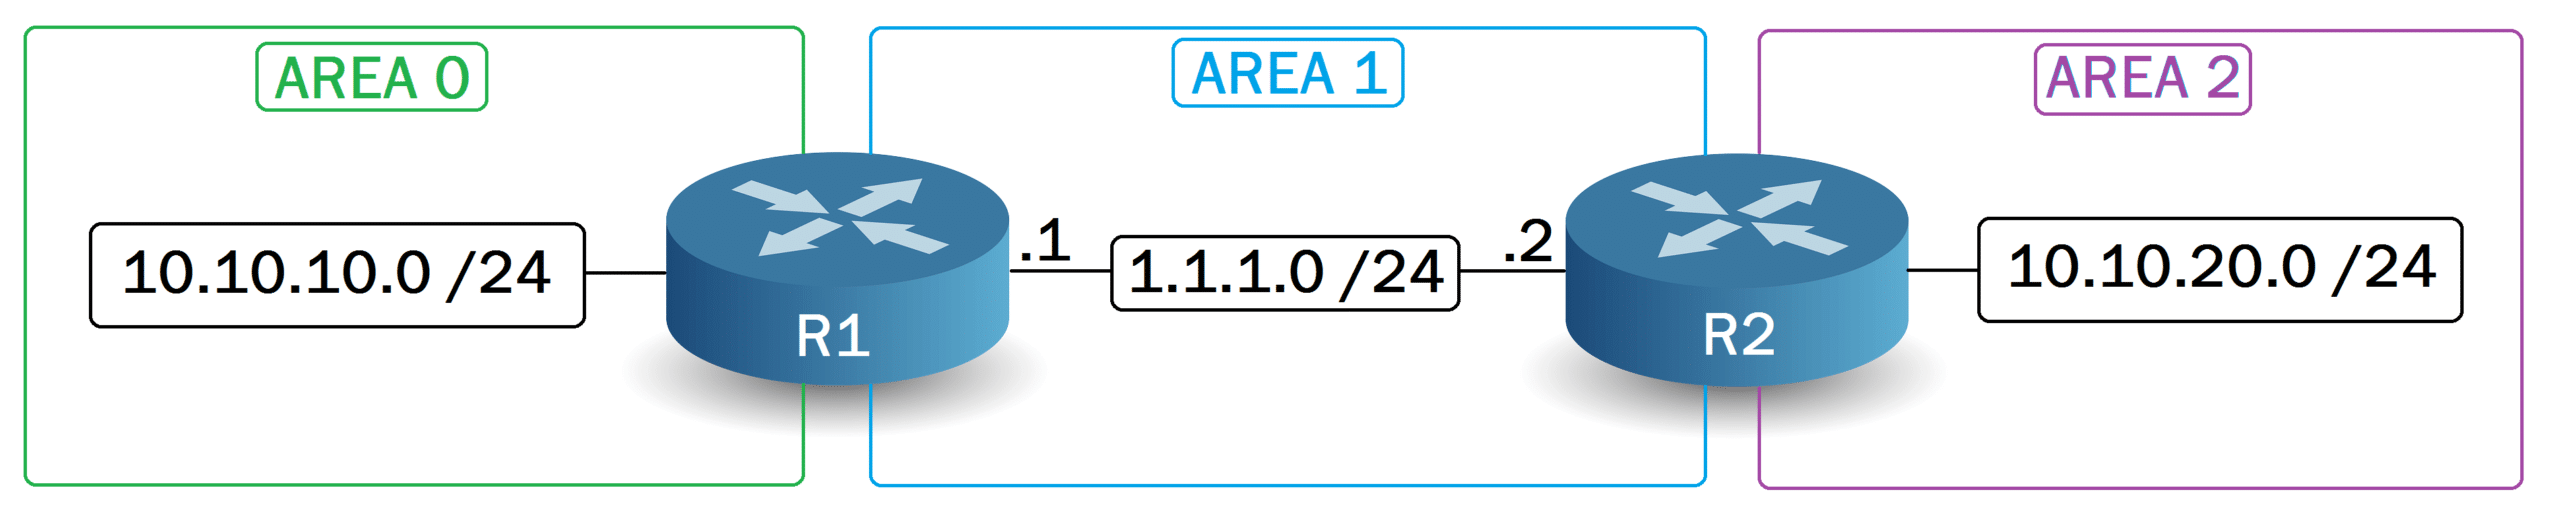 L'Area 2 n'est pas connectée à l'Area 0